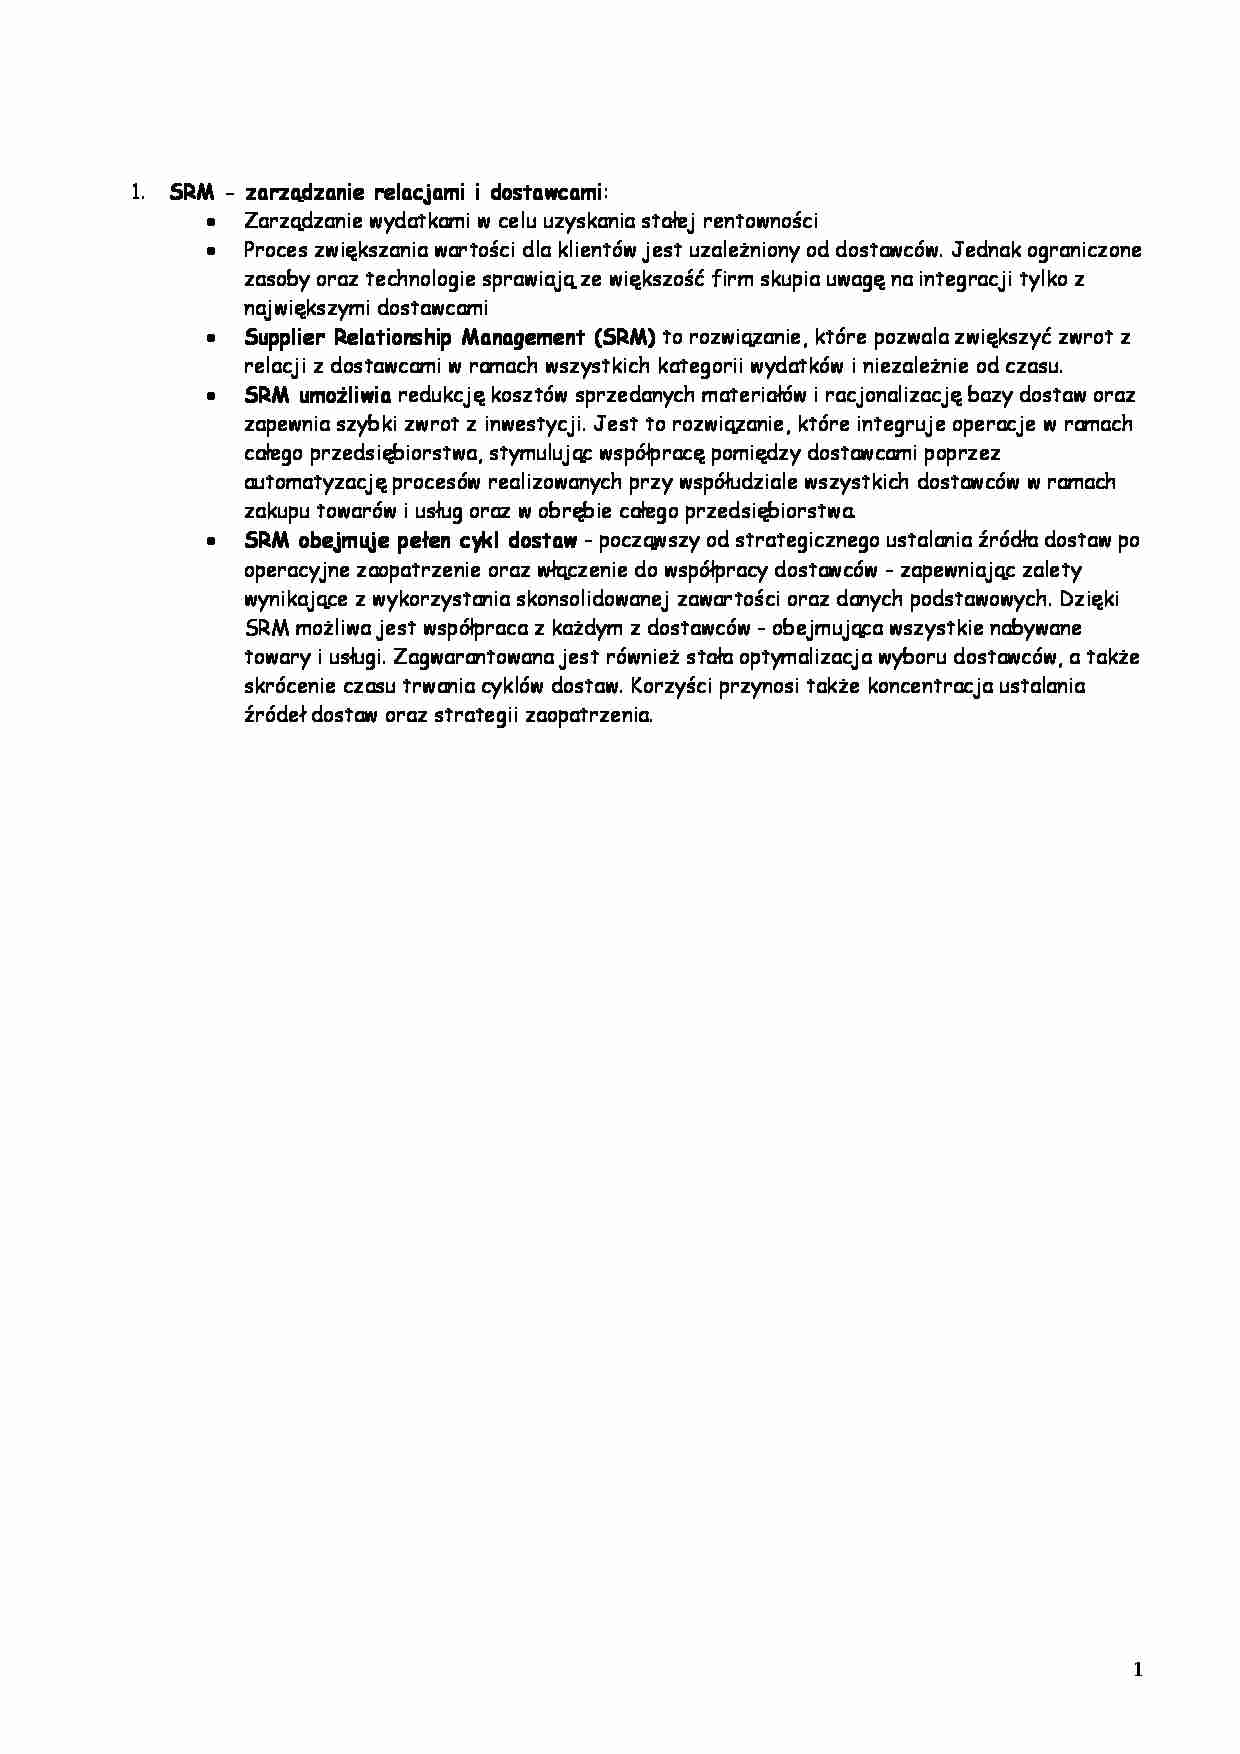 Zarządzanie produkcją i usługami - SRM - strona 1